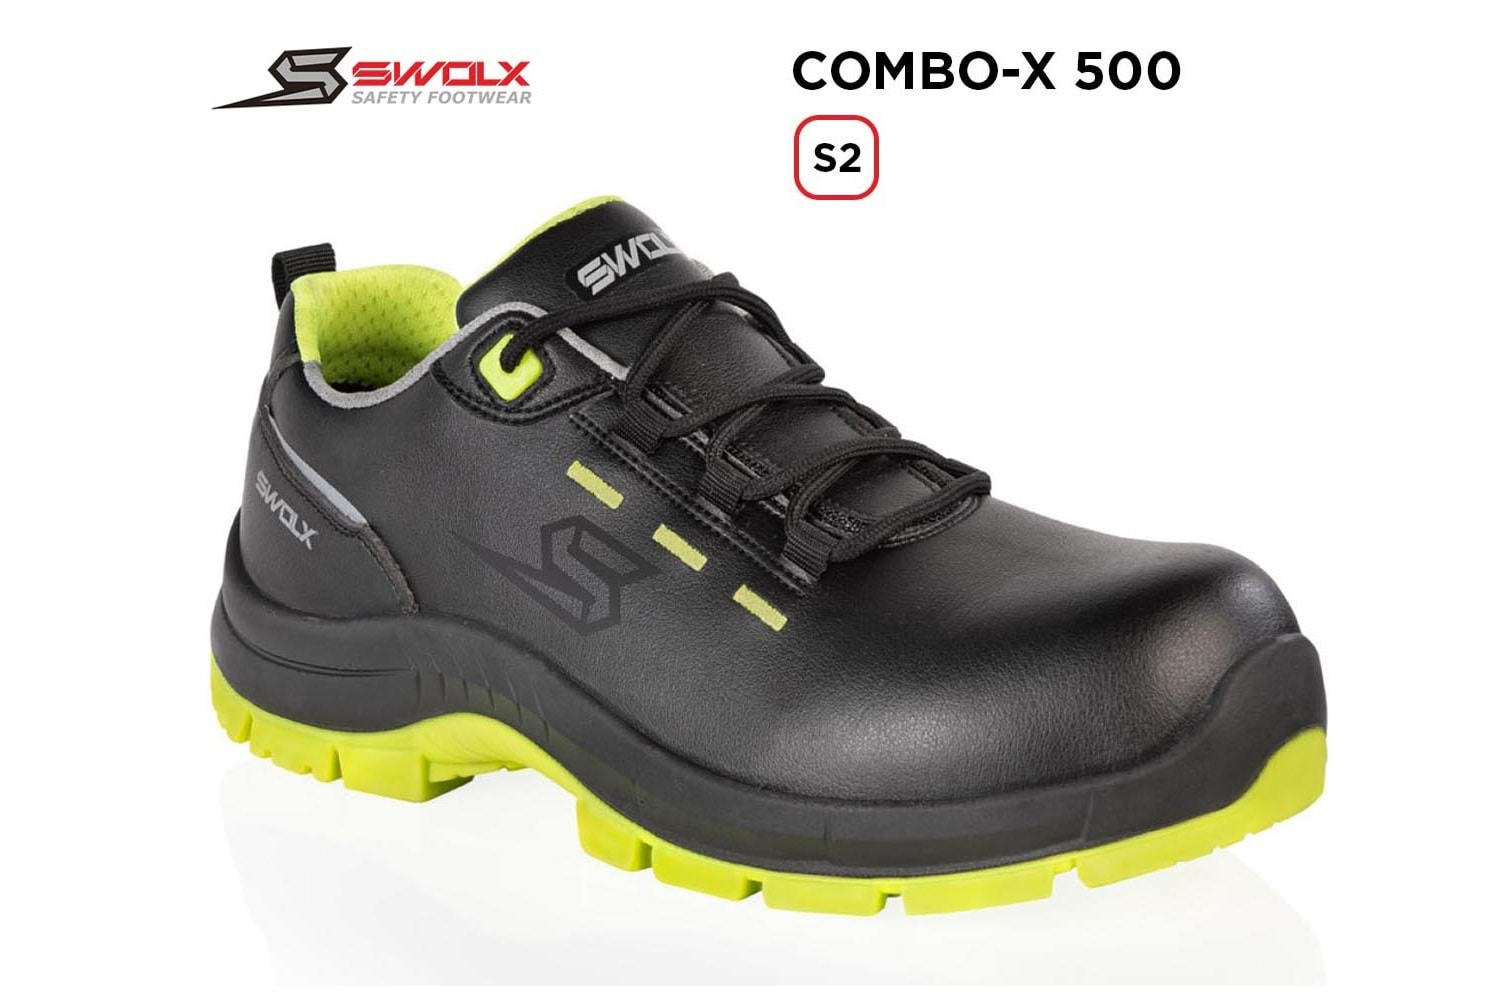 Swolx İş Ayakkabısı - Combo-X 500 S2 - 40